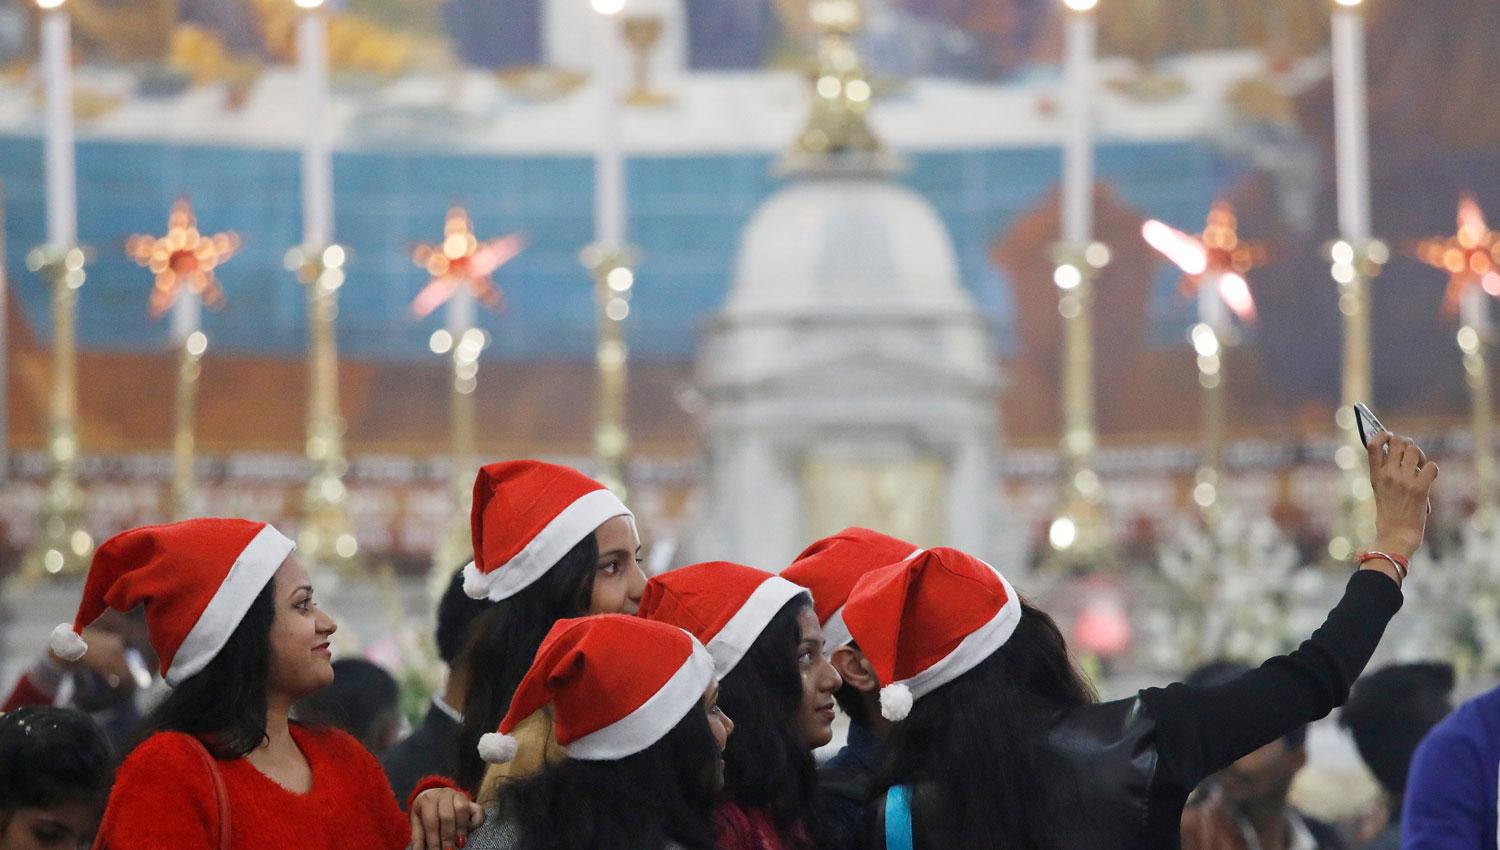 UNA SELFIE. Con el celular en la mano, una joven retrata a sus amigas durante la celebración de la Navidad en Nueva Delhi, en India. REUTERS